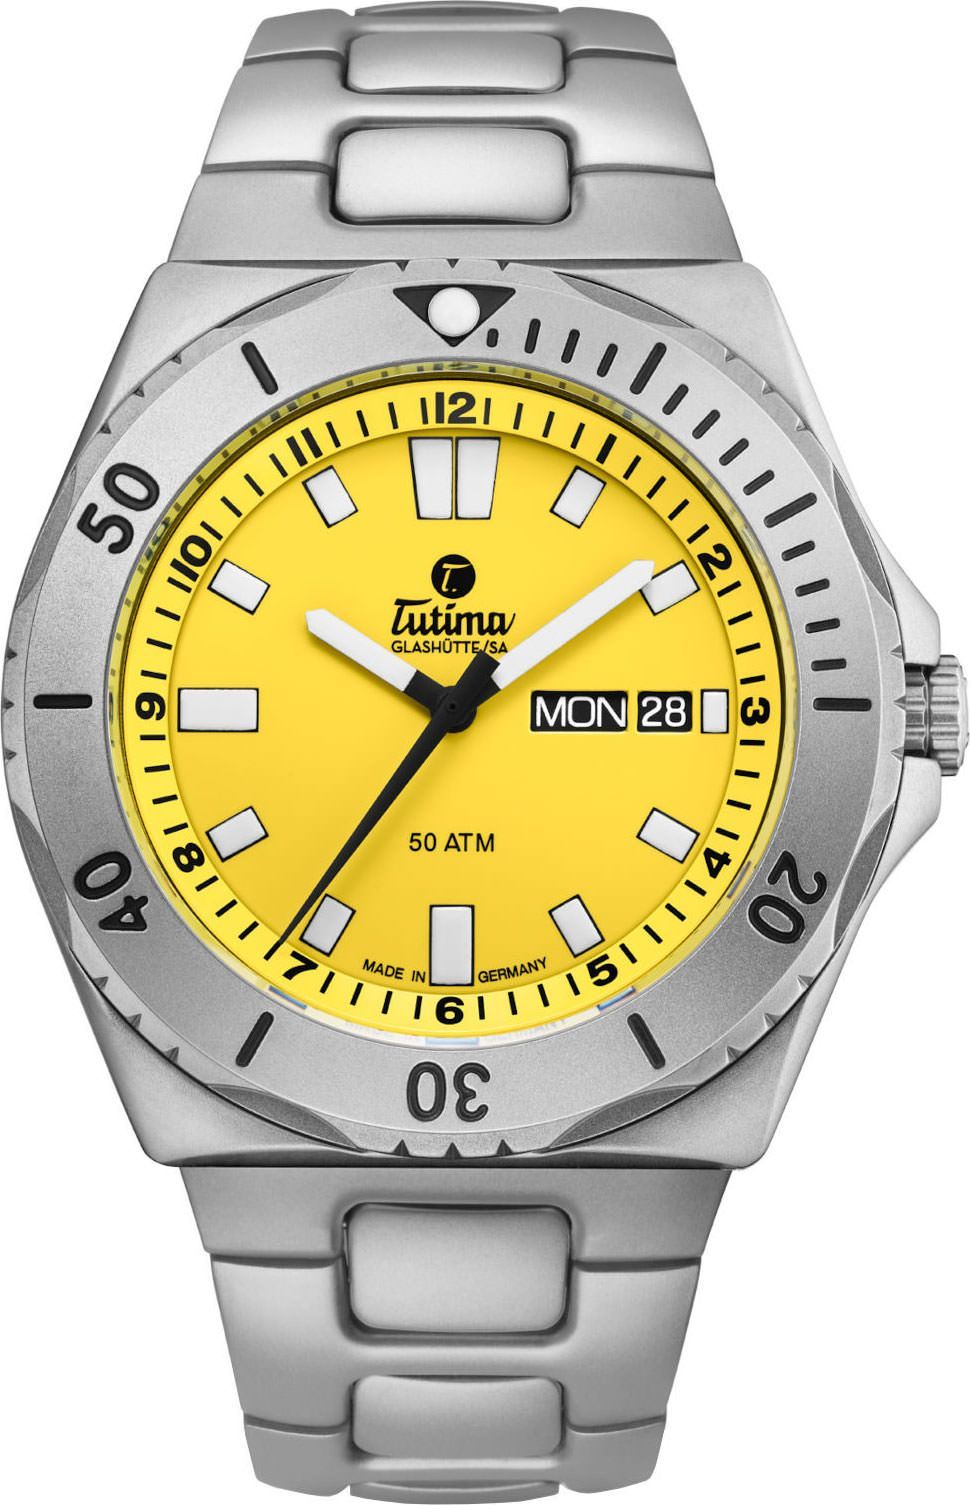 Tutima Glashütte Seven Seas 44 mm Watch in Yellow Dial For Men - 1